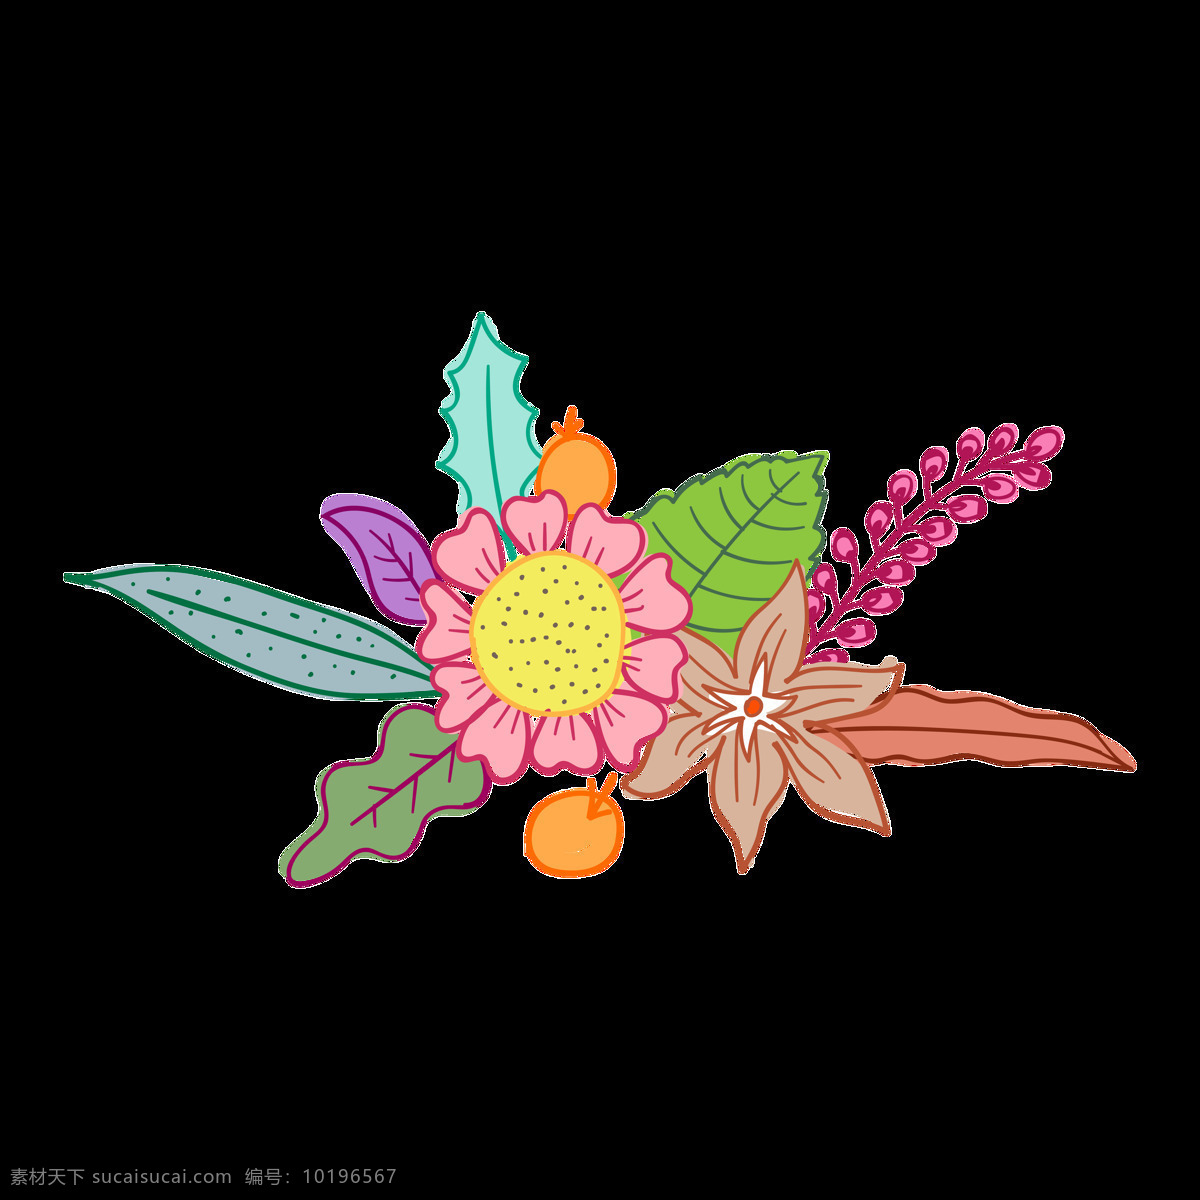 各类 花卉 植物 透明 装饰 海报设计装饰 卡通 免扣 设计素材 水彩 淘宝素材 透明素材 装饰图案